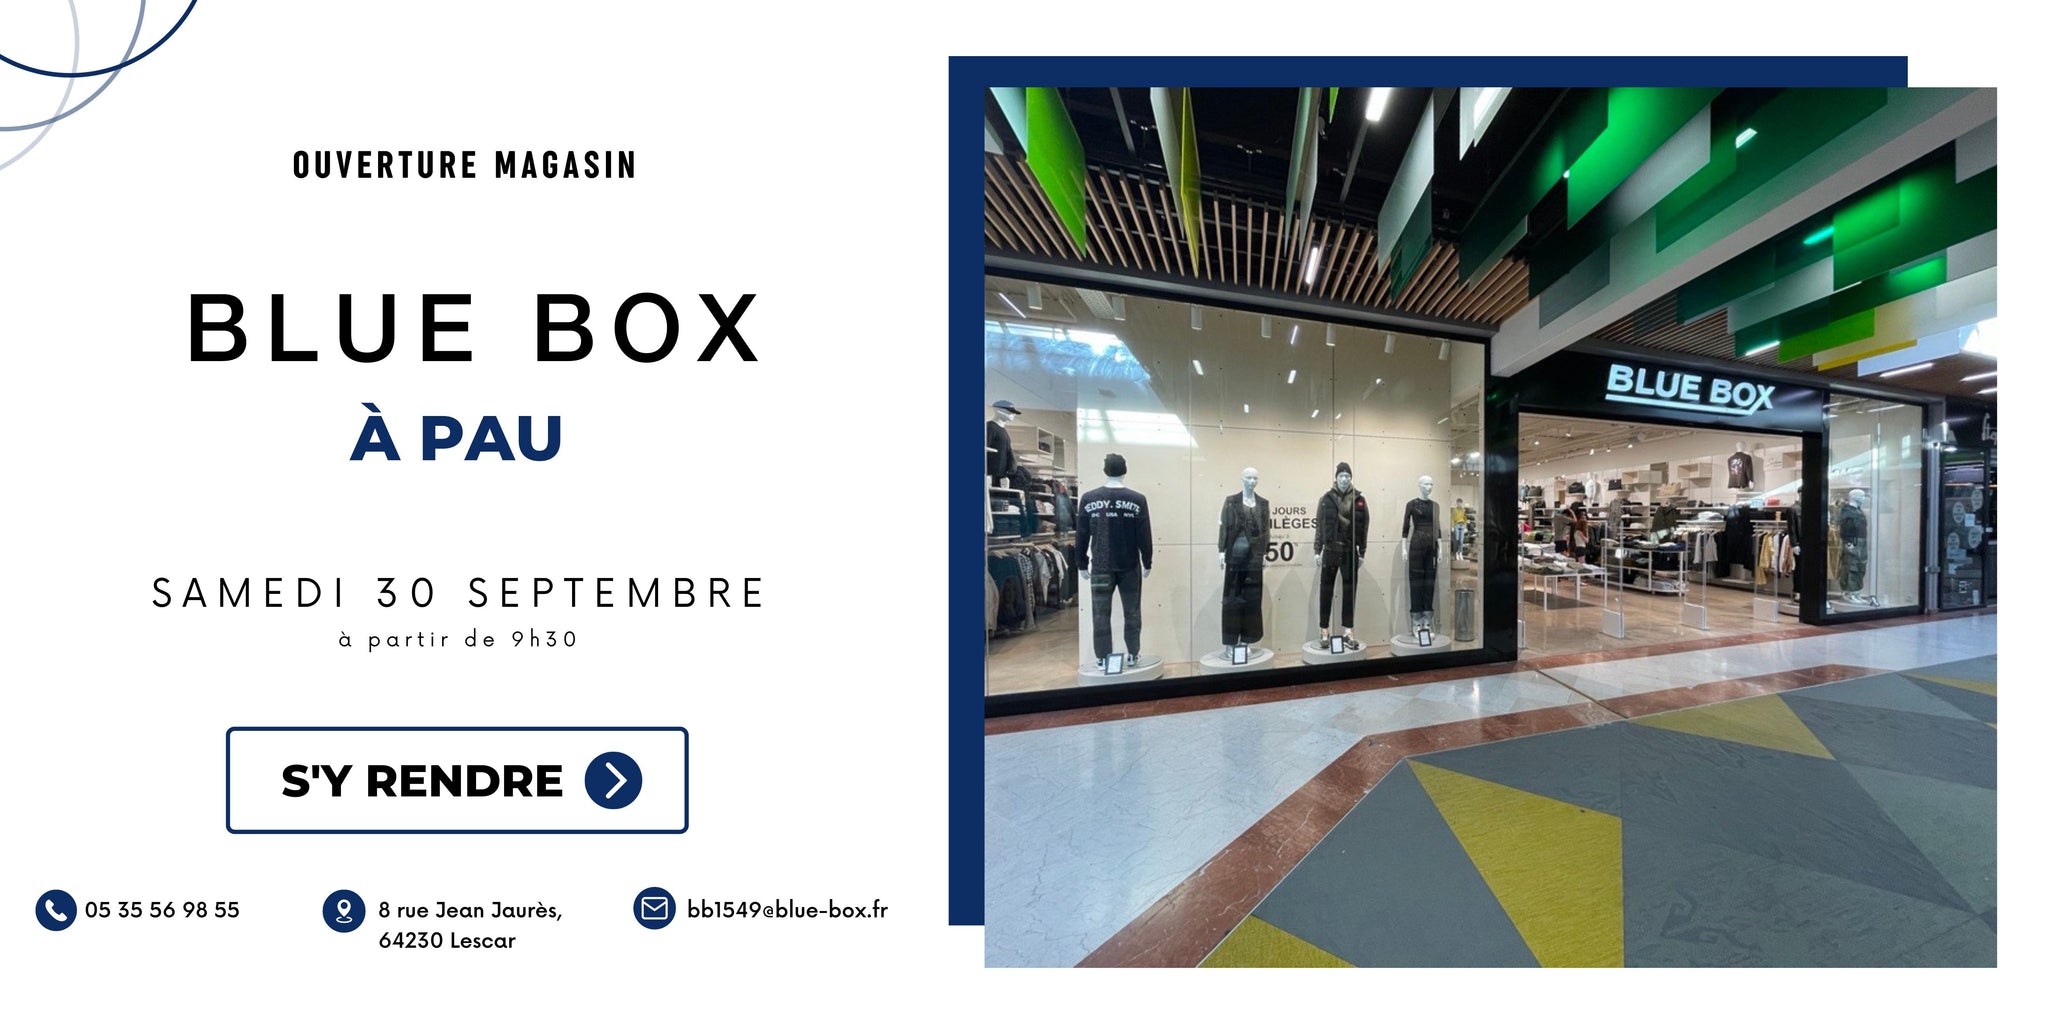 Ouverture d’un nouveau magasin Blue Box à Pau Lescar